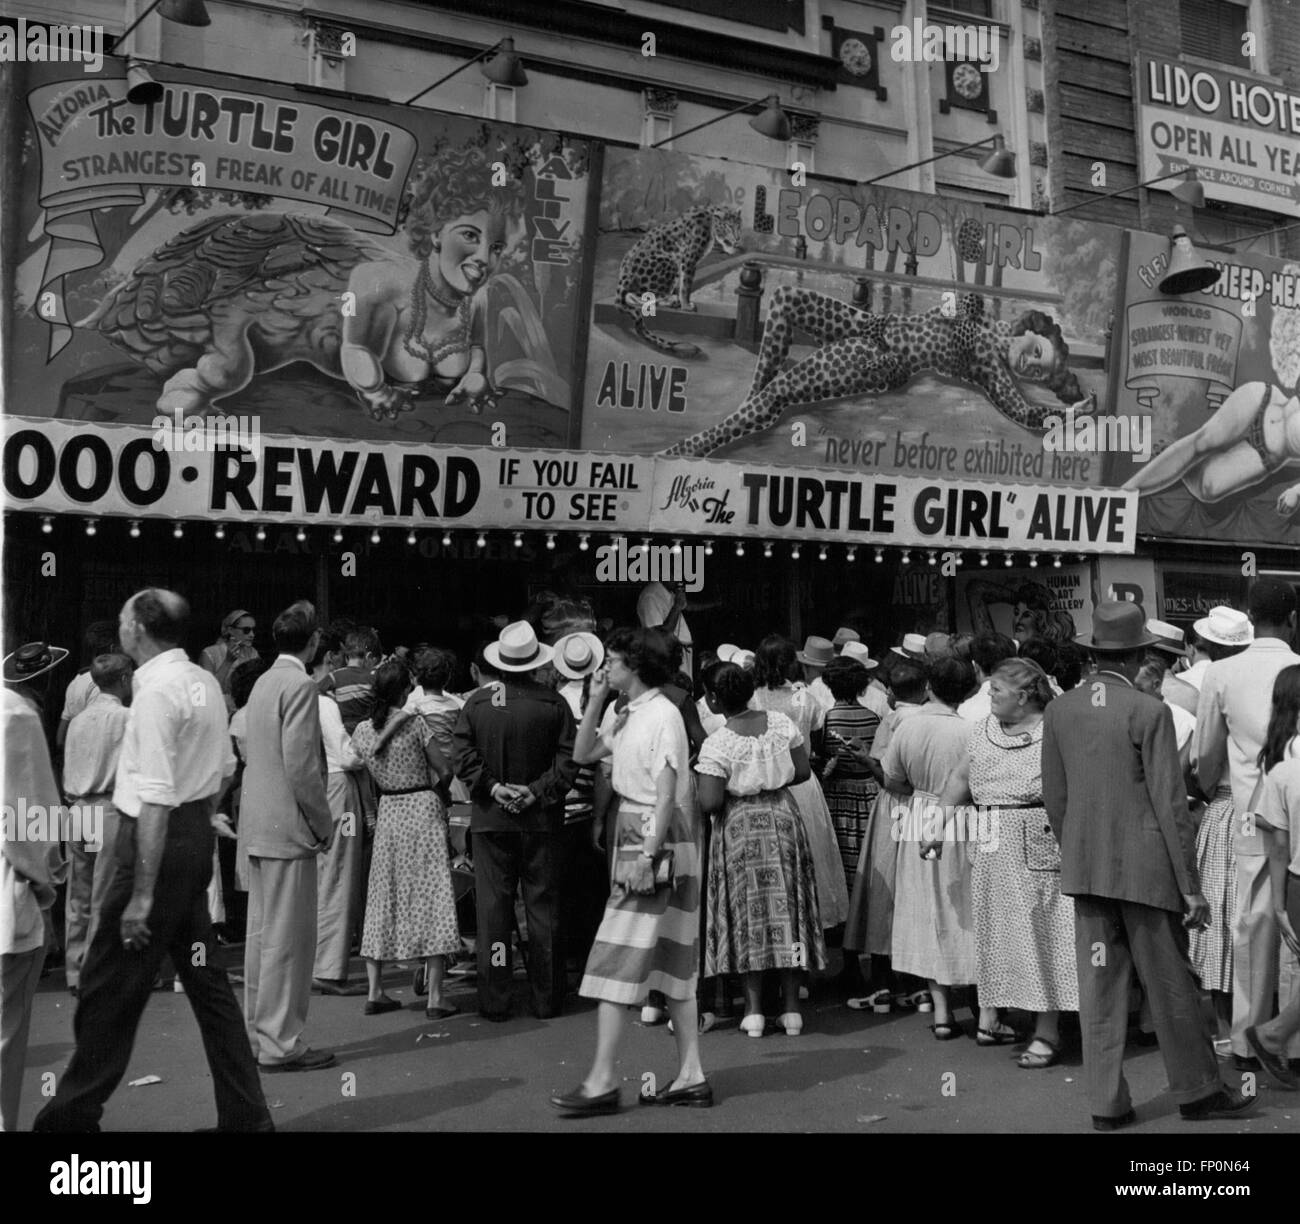 1962 - Coney Island : Le freak shows obtenez les foules à Coney Island. La curiosité que les marques nous tous est la clé de l'entreprise et apporte de l'argent. Ce salon est doté d' '' La Turtle Girl'', ''Le Leopard Girl'' et le ''Sheep dirigé girl''. Un cadeau est proposé de mille dollars s'ils ne sont pas en vie. Essayez donc de les recueillir ! © Keystone Photos USA/ZUMAPRESS.com/Alamy Live News Banque D'Images